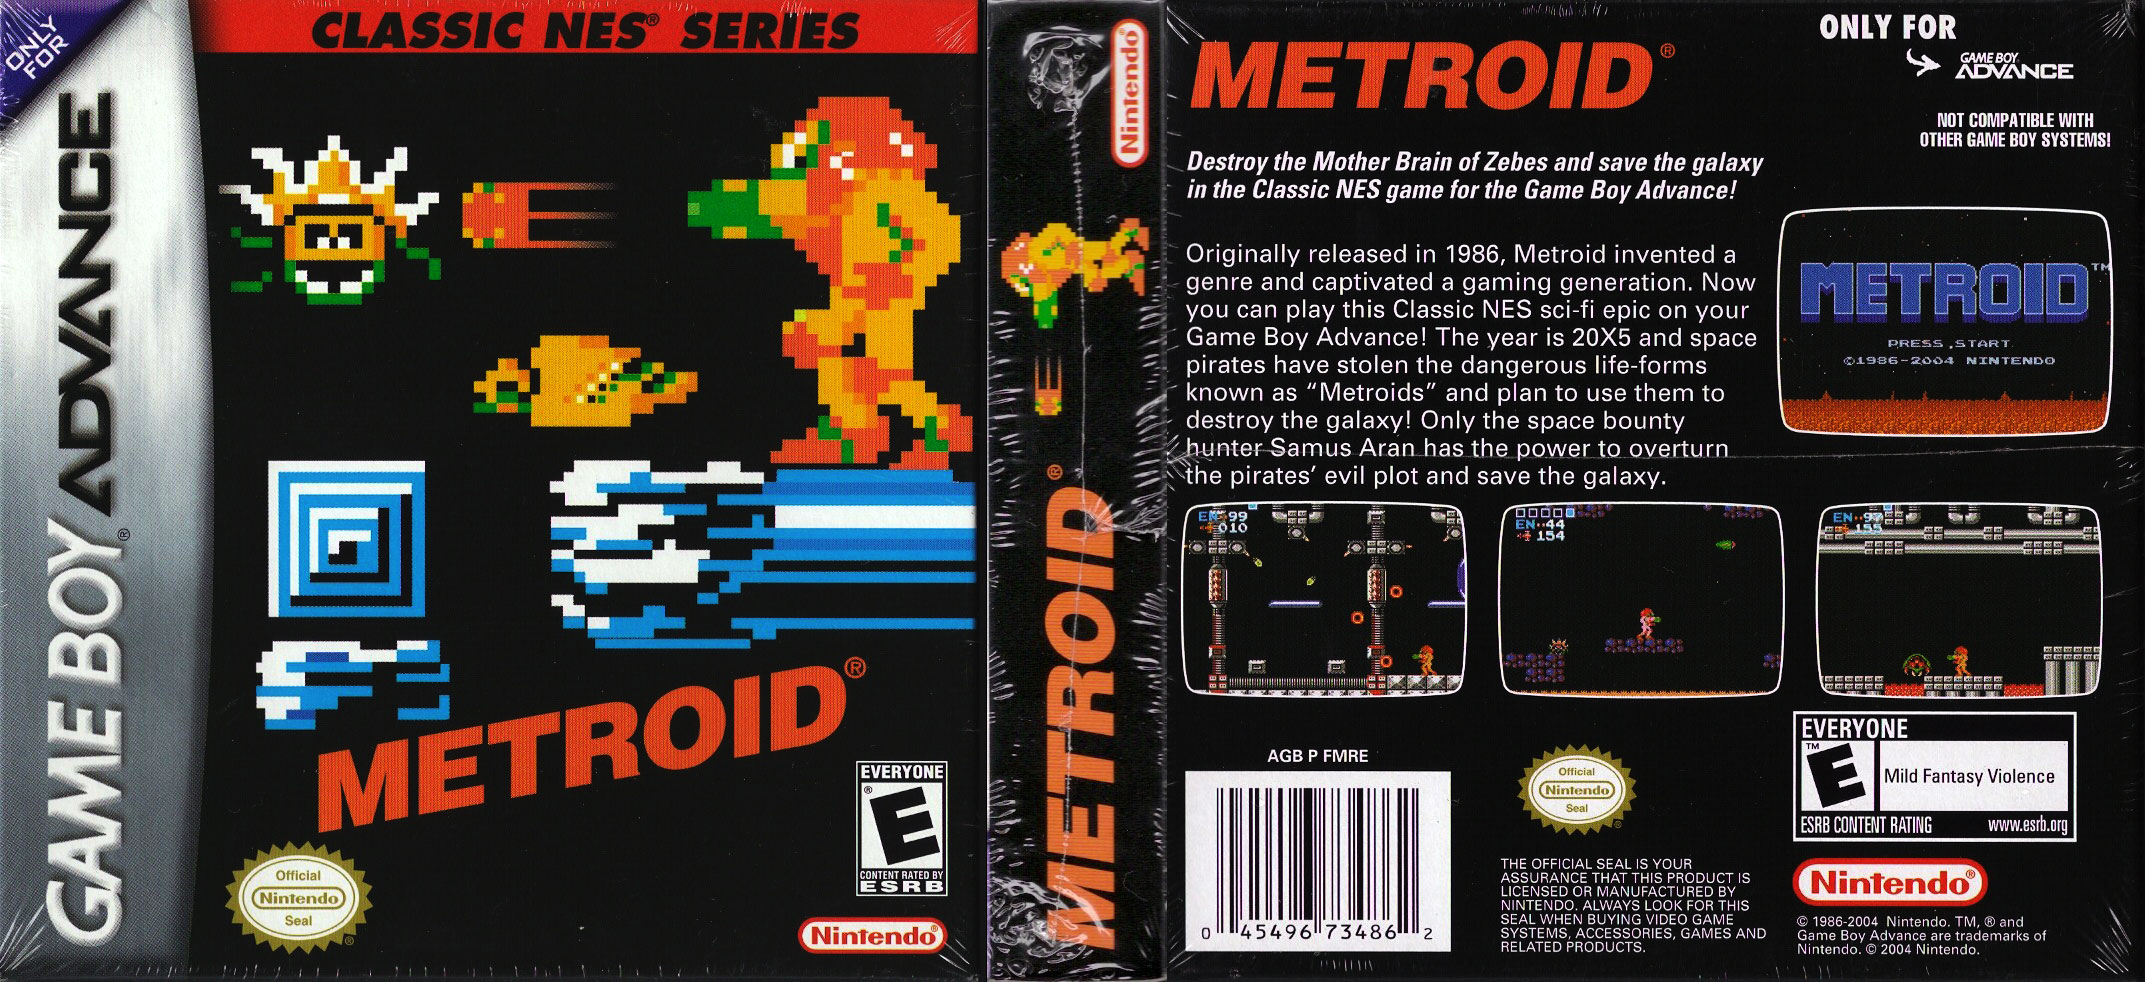 Nintendo metroid. Metroid 1986 карта. Metroid NES обложка. Metroid (NES, 1986). Супер метроид карта NES.